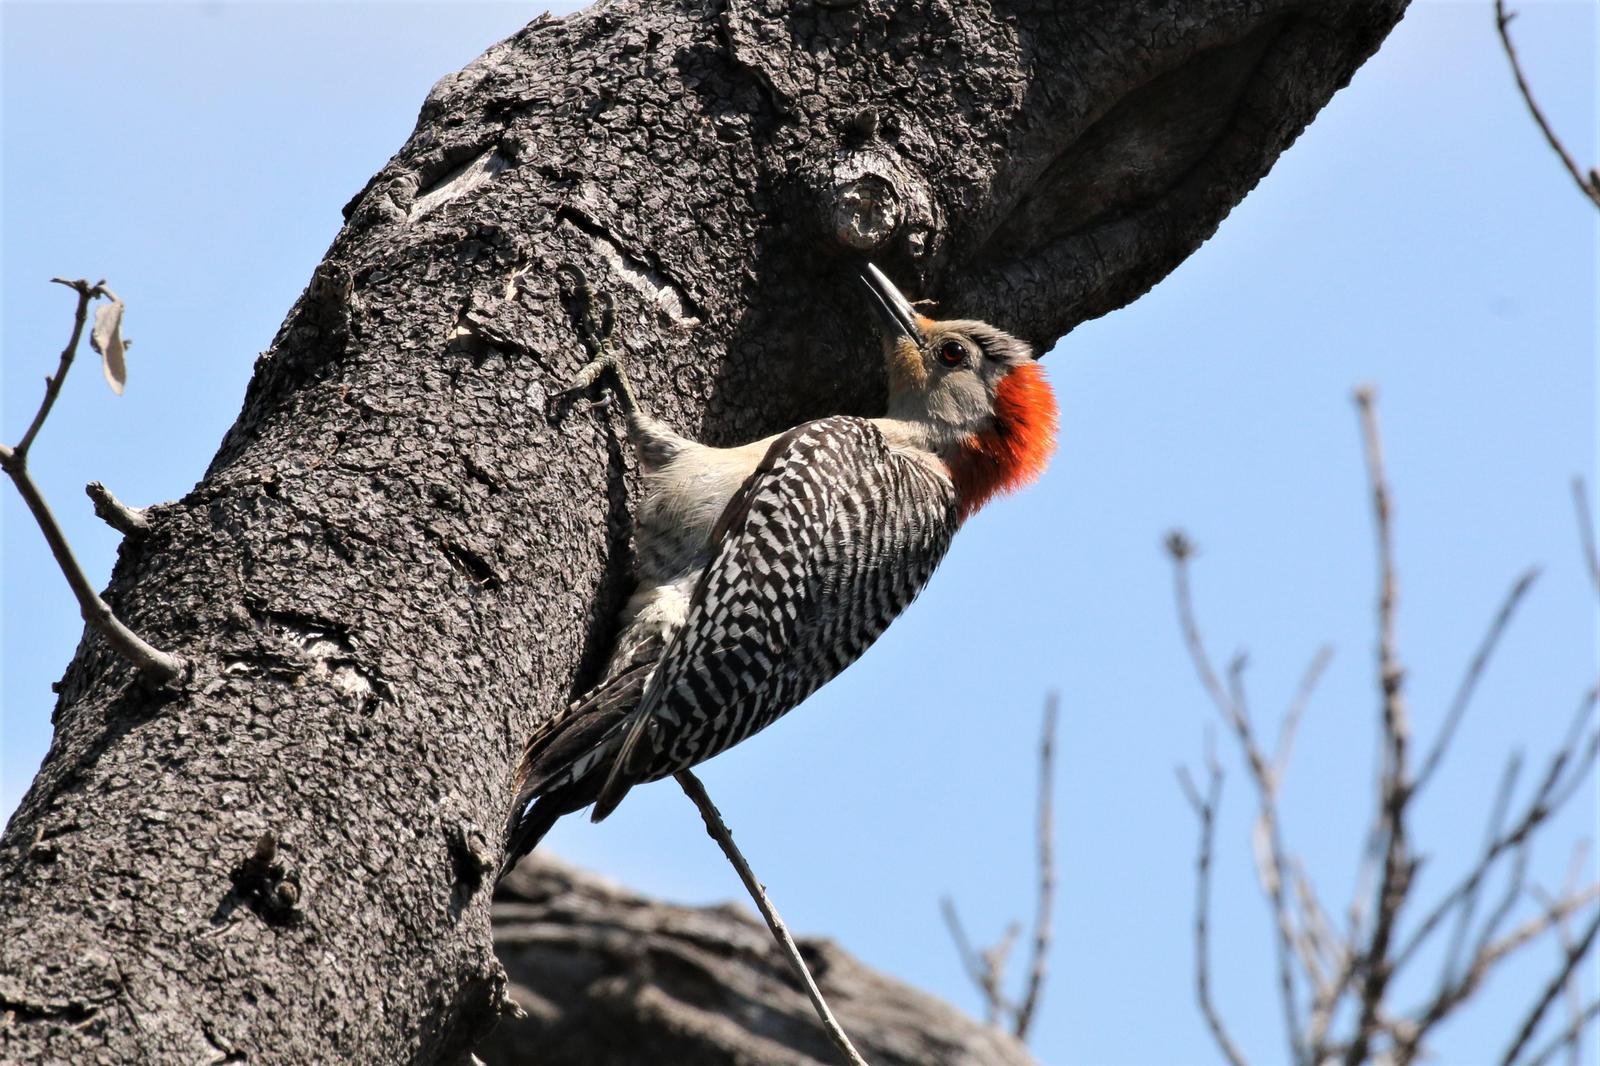 Red-bellied Woodpecker Photo by Richard Jeffers